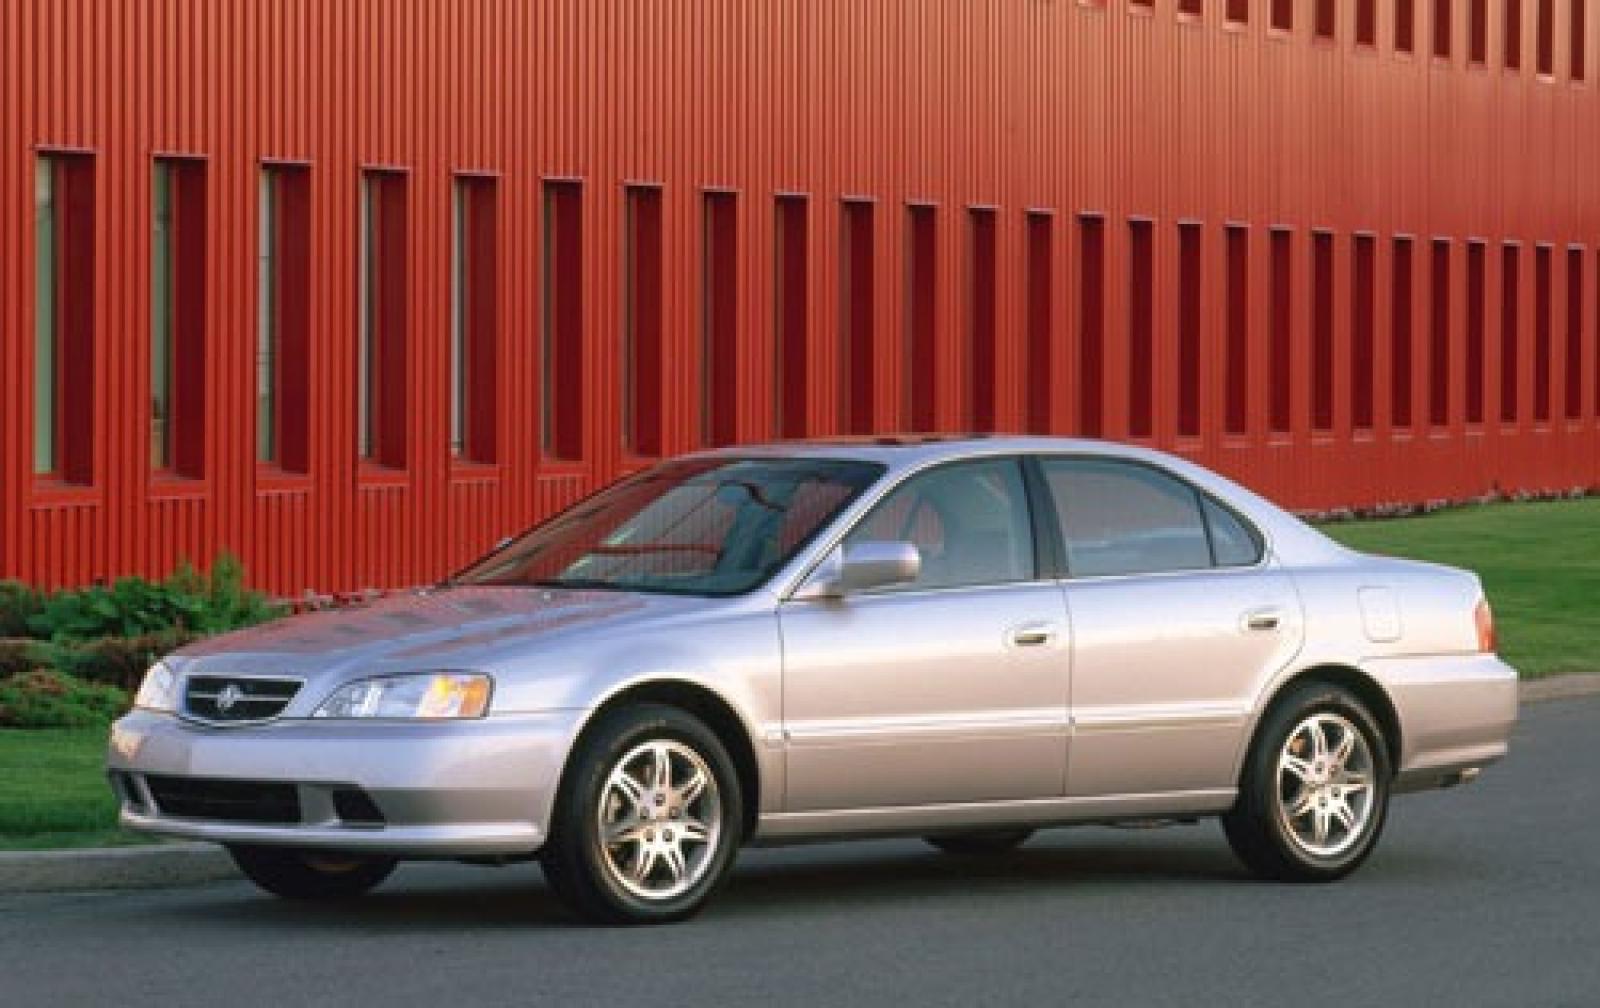 Acura TL II 1998 - 2001 Sedan #2